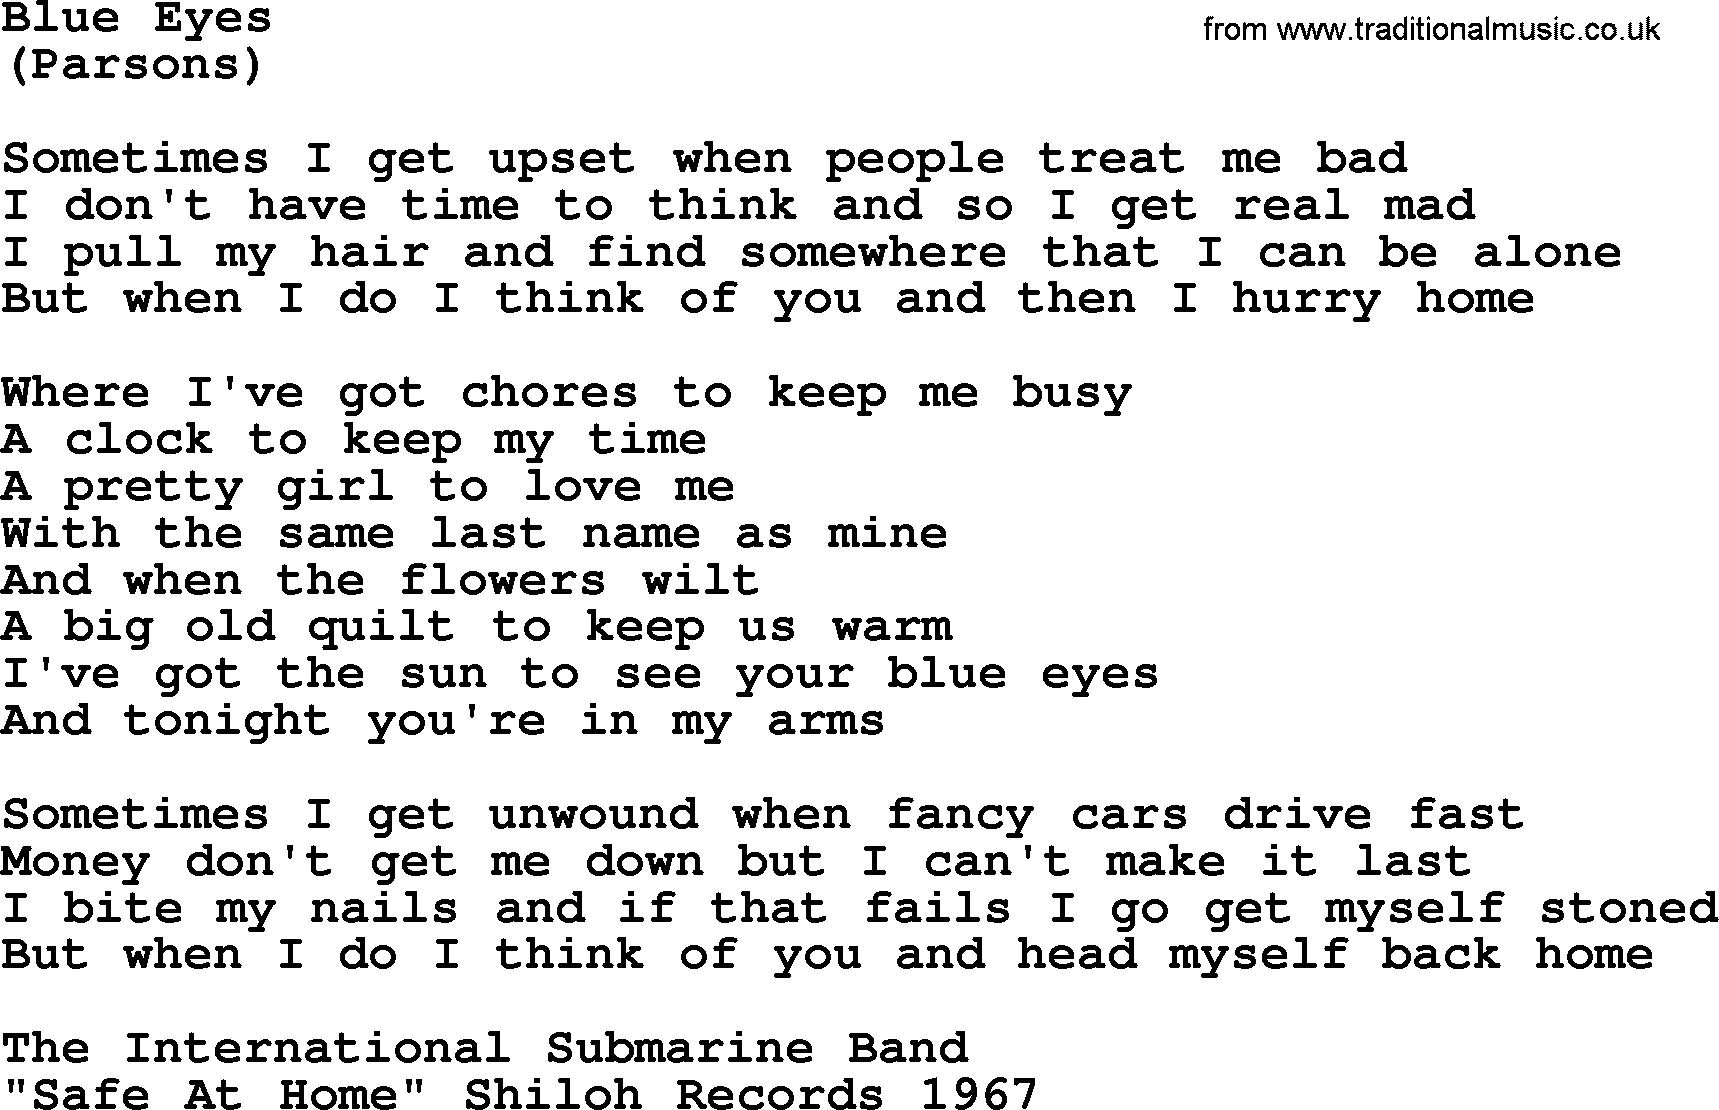 The Byrds song Blue Eyes, lyrics